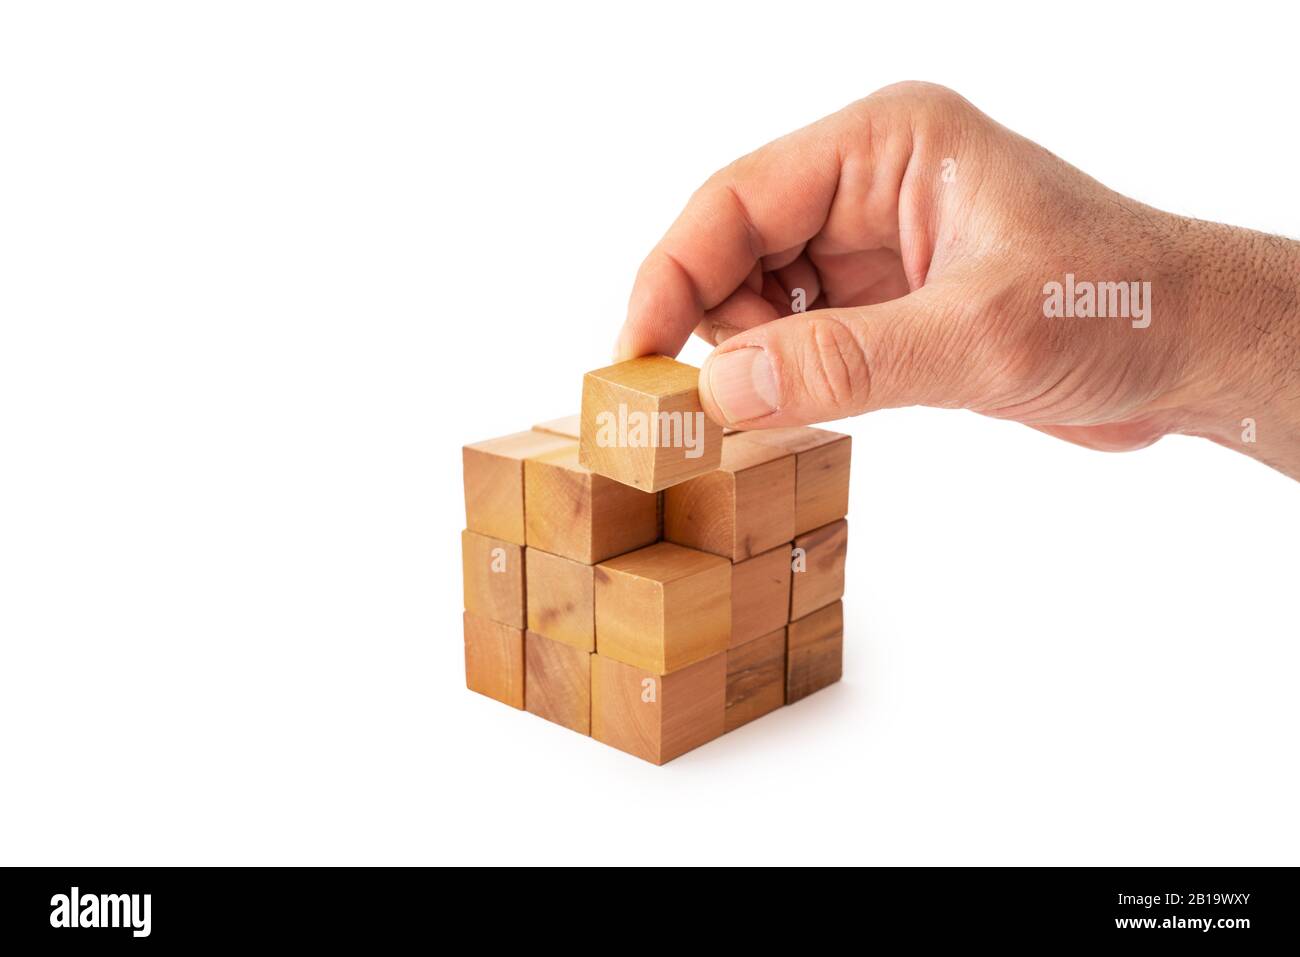 Une main met le dernier cube pour construire un cube avec des cubes en bois sur fond blanc. Succès, stratégie, travail d'équipe et concept de victoire Banque D'Images